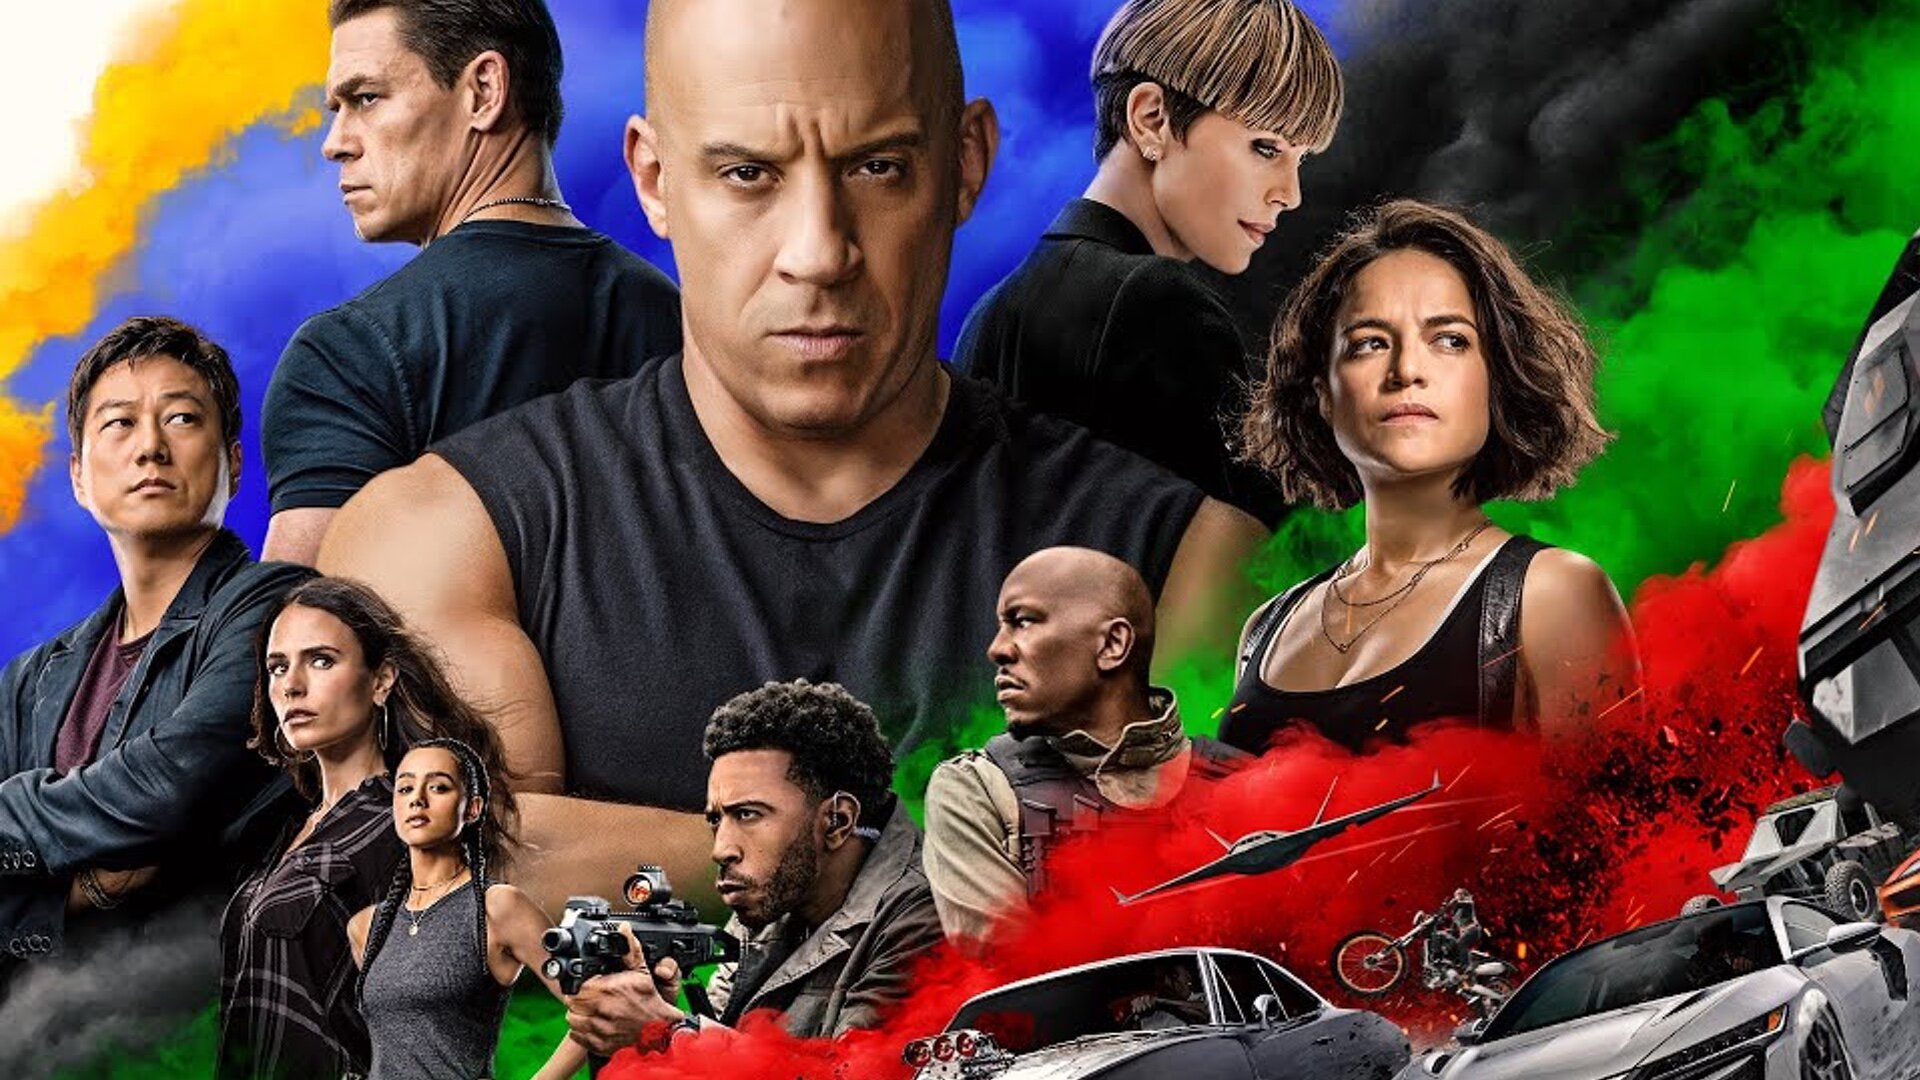 Phần mới nhất trong series Fast & Furious được kỳ vọng sẽ lập doanh thu cao trong mùa phim hè.